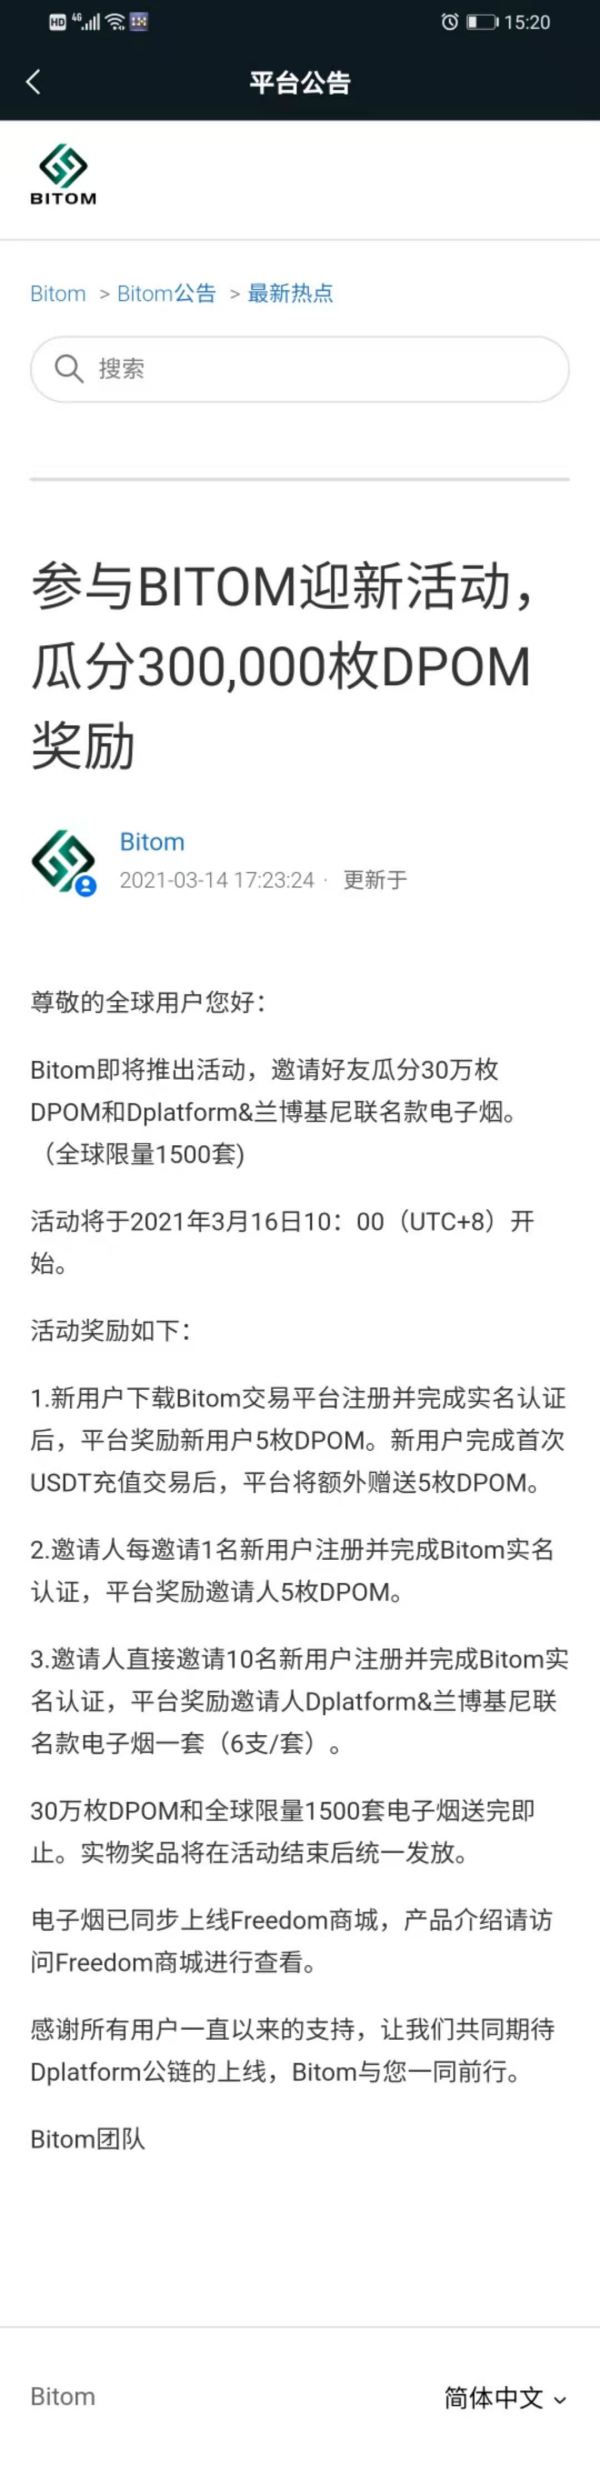 BITOM交易所：注册实名送5枚DPOM，价值50RMB，邀请一人注册实名送5枚DPOM，活动空投总量30W枚